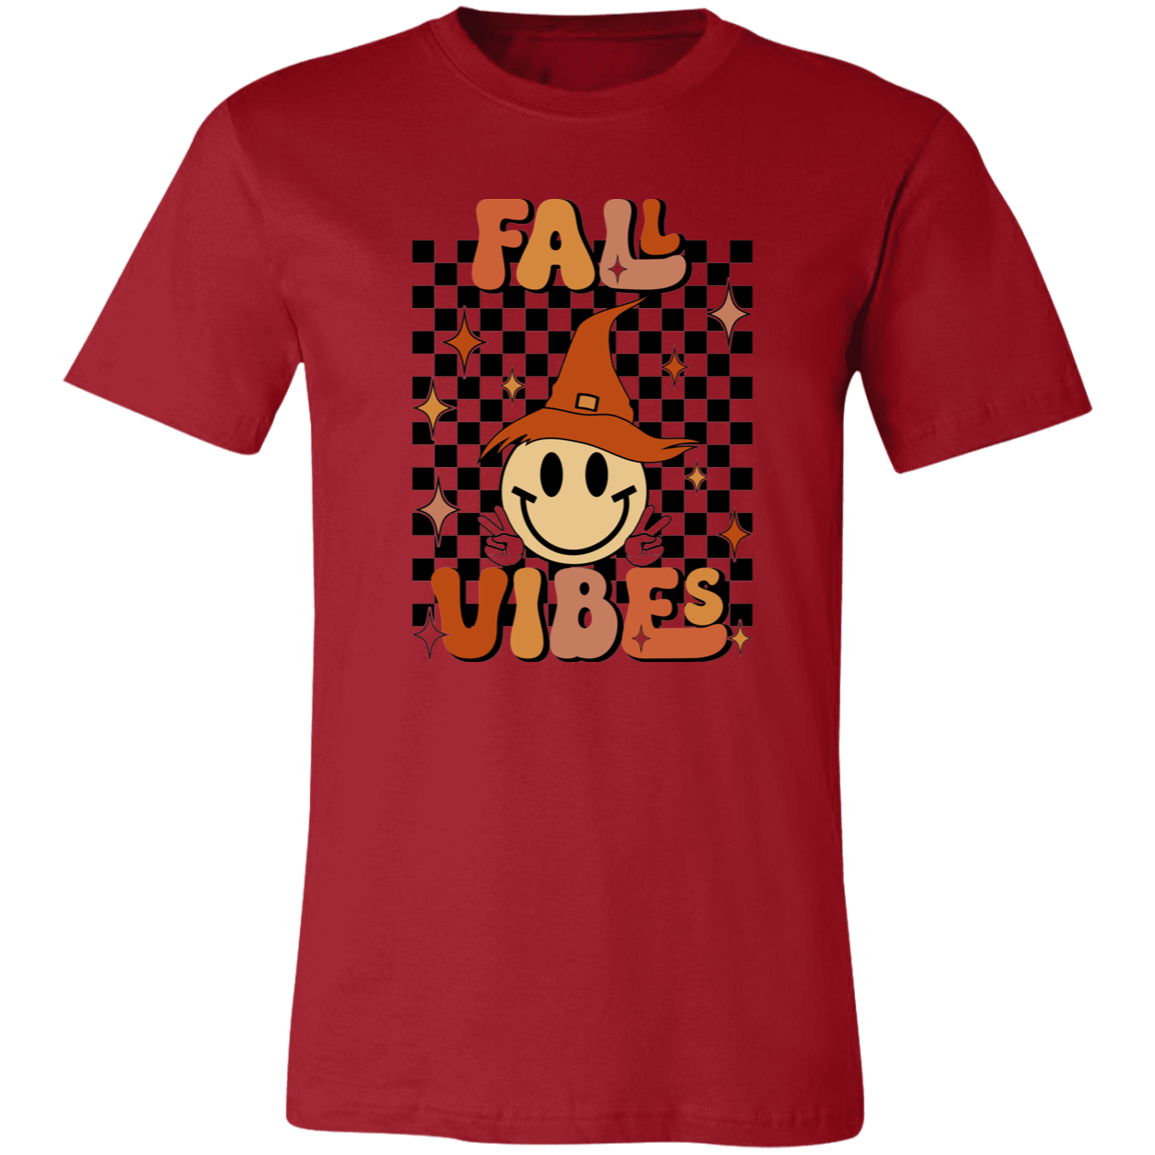 Fall Vibes Shirt